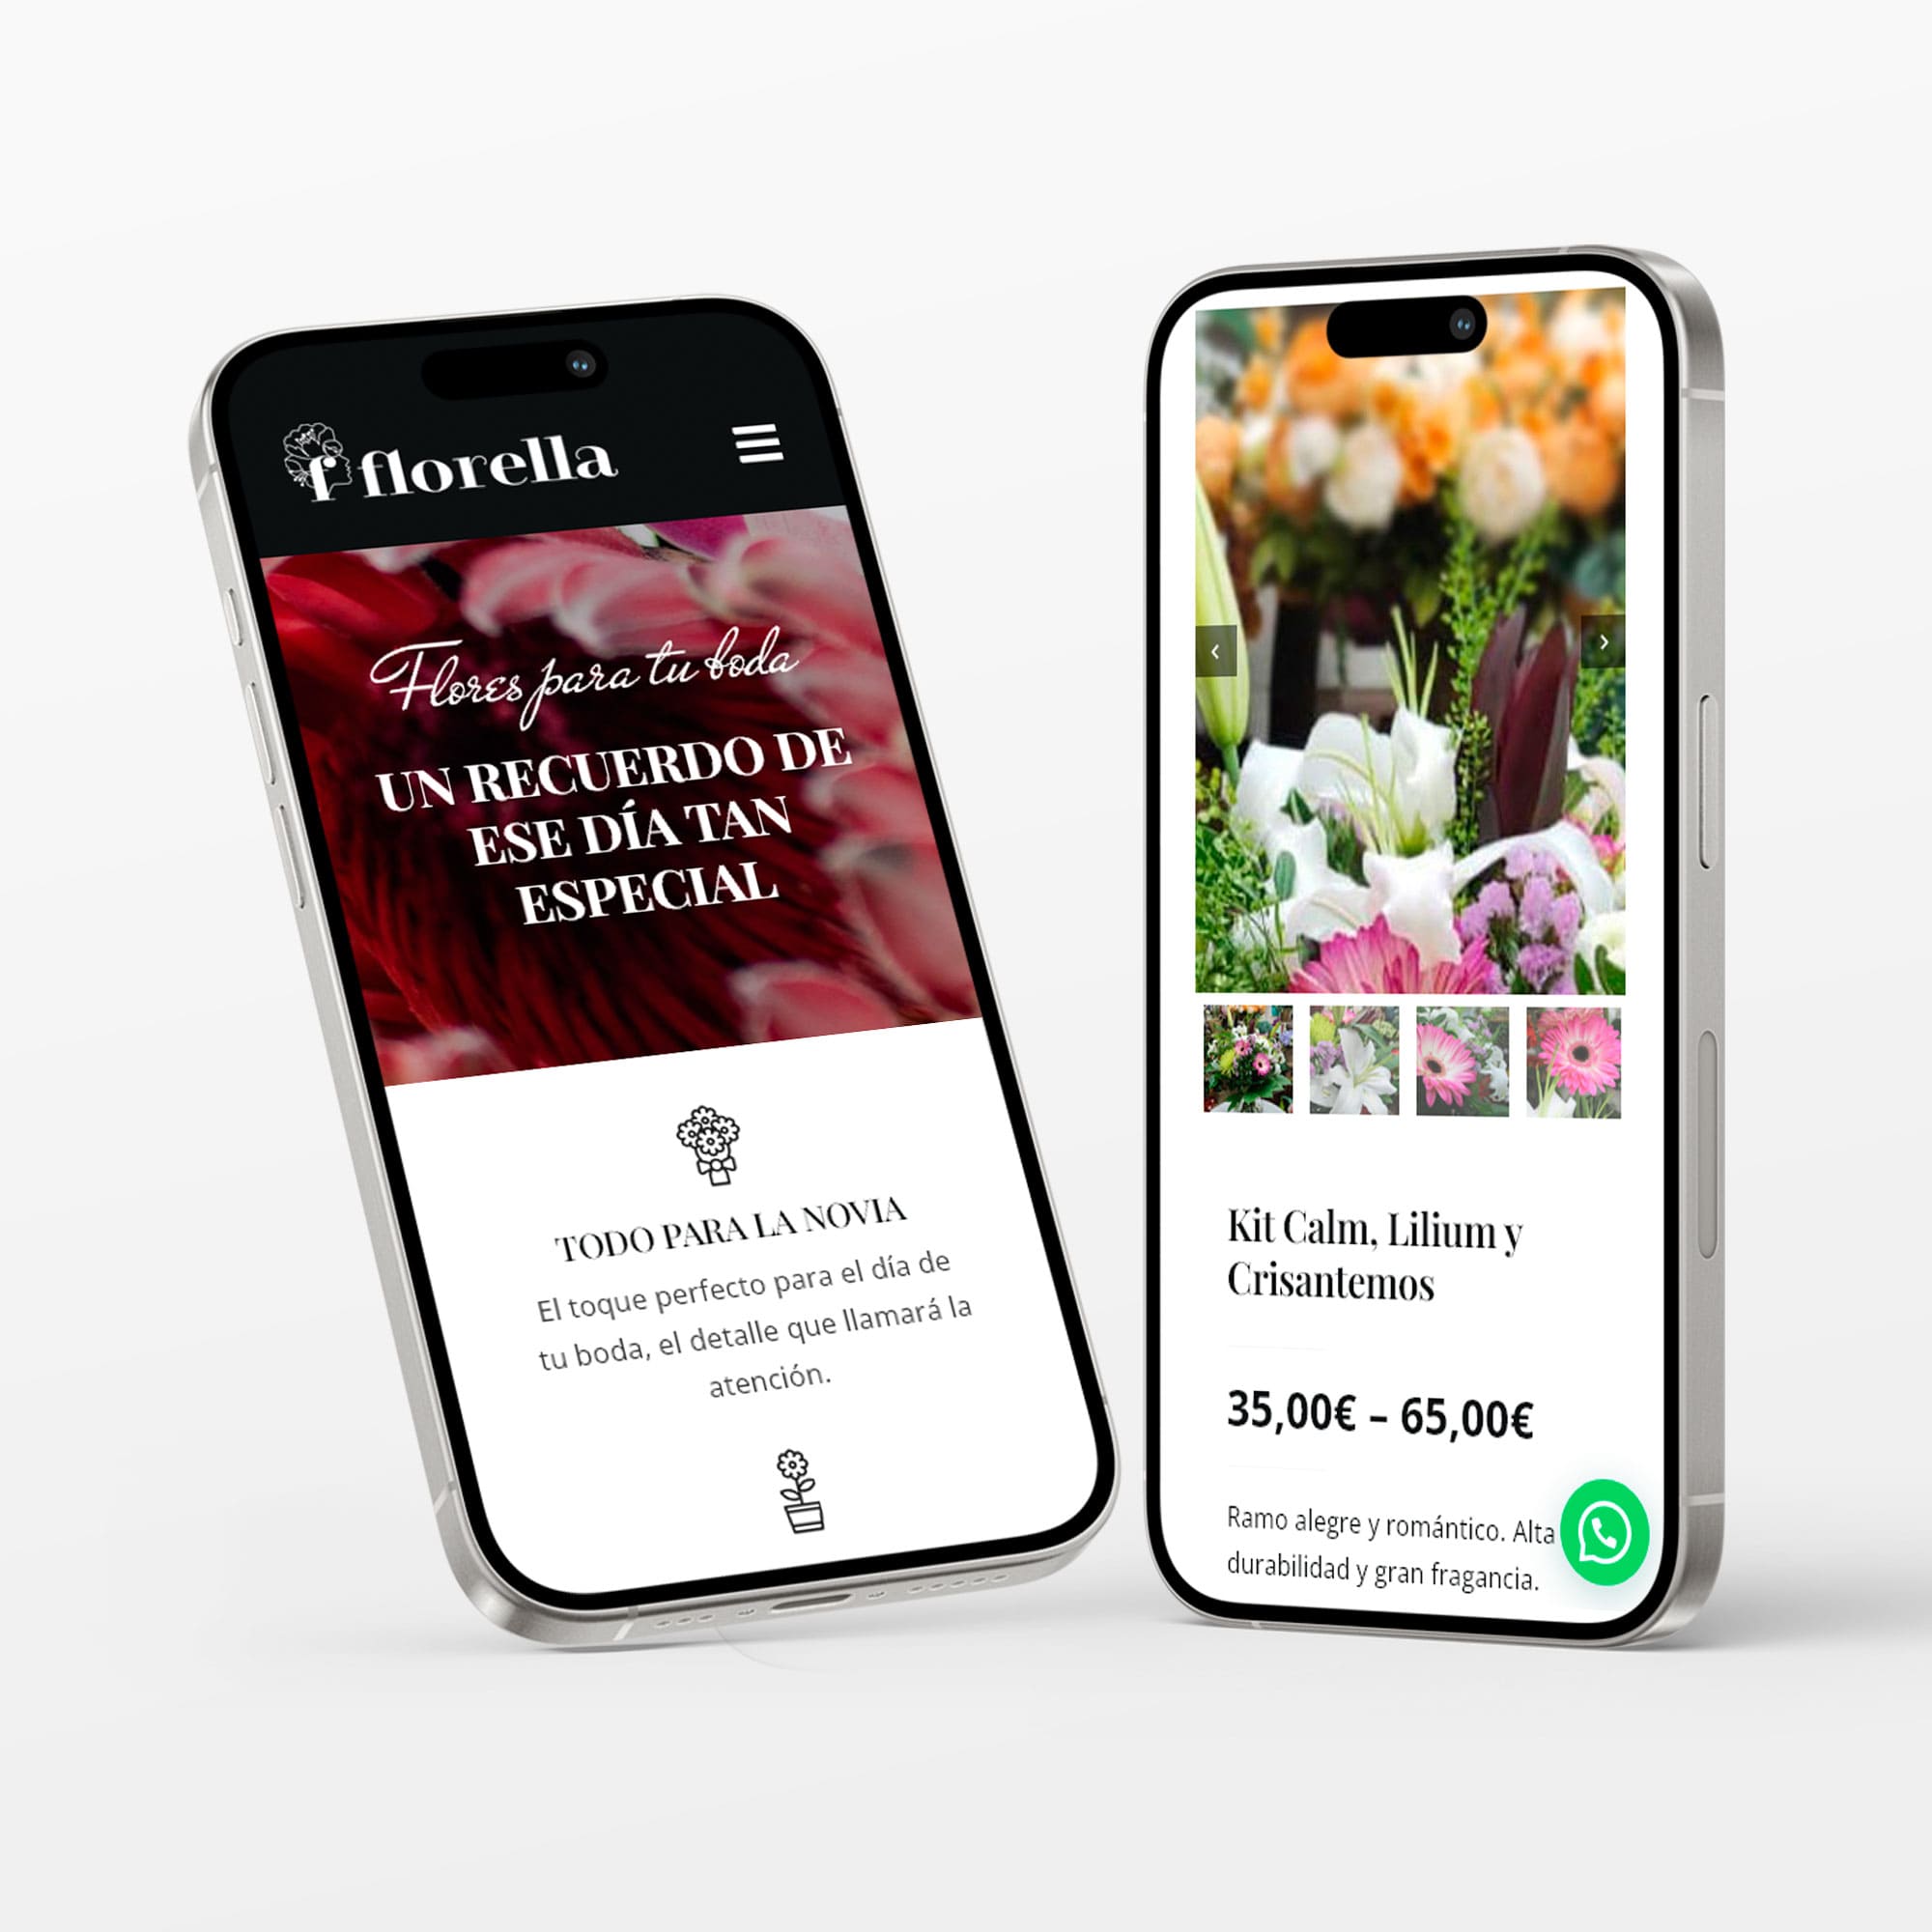 Florella Alegría Floral, floristería online con tienda física en Mieres. Diseño versión móvil